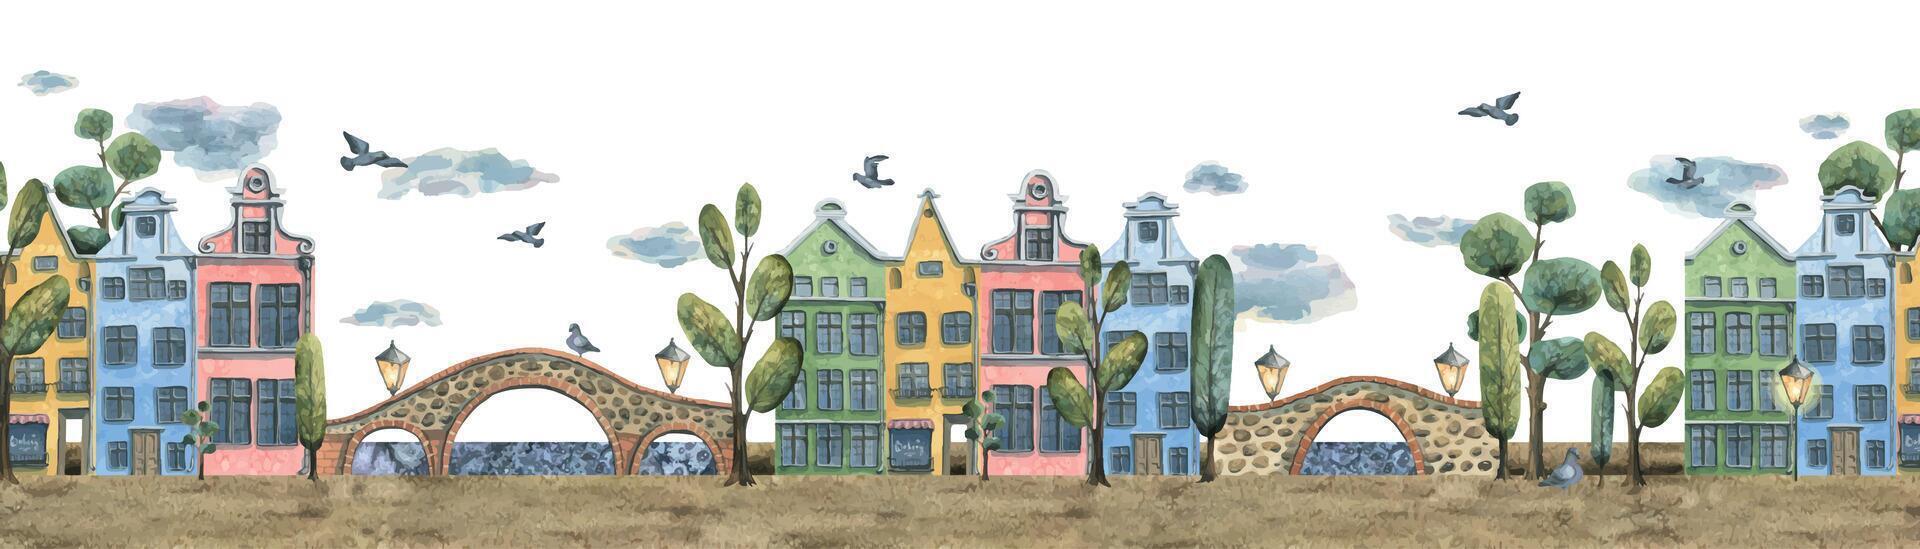 waterverf illustratie van een reeks van schattig oud stad- huizen. Europese veelkleurig huizen, bruggen, tekenfilm bomen, straat lamp, duiven, wolken. voor de ontwerp van ansichtkaarten, affiches, spandoeken, website vector